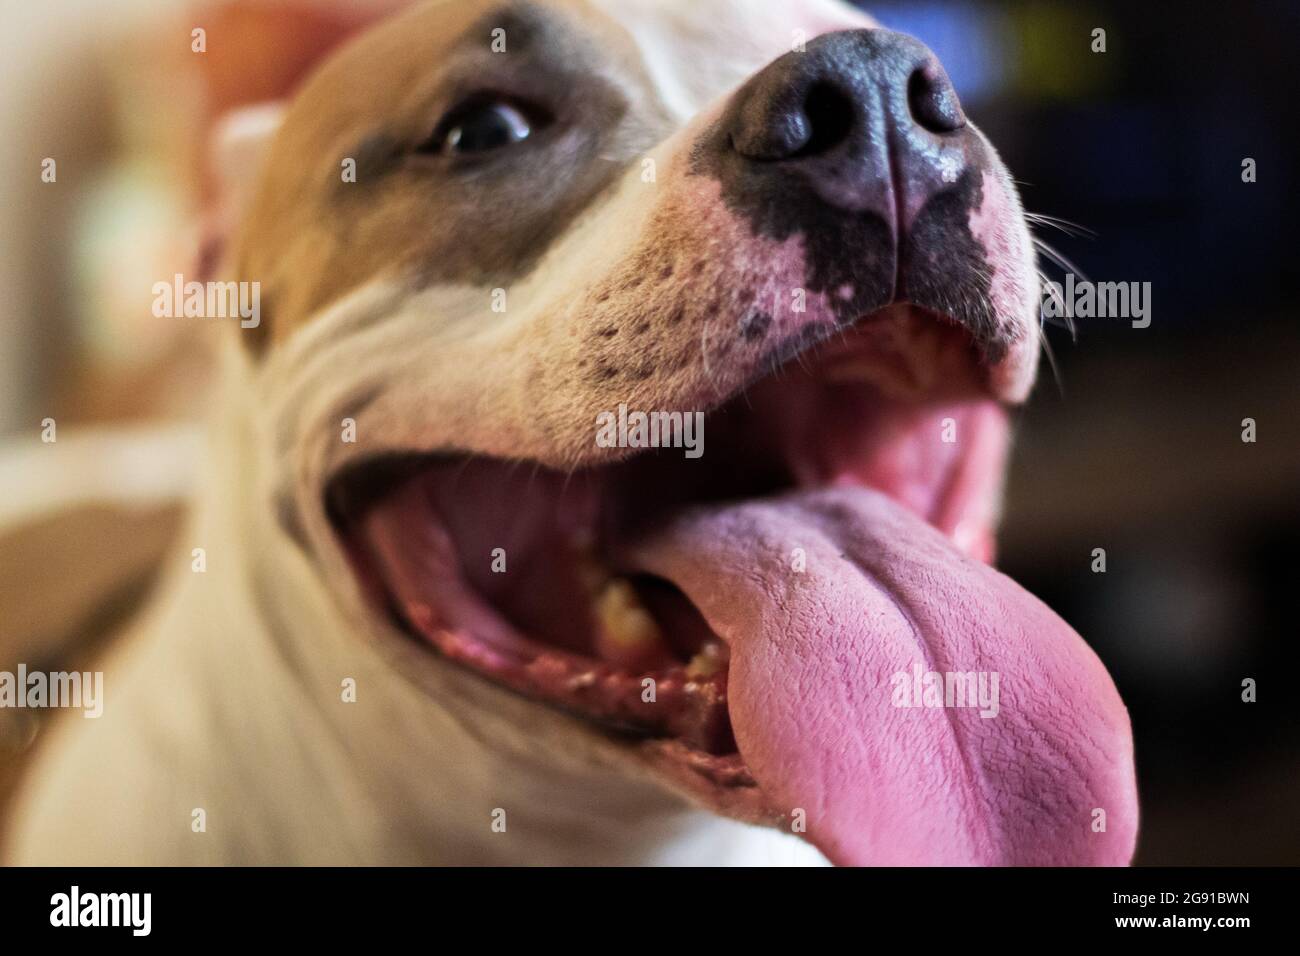 Un pantalon de chien pitbull de race mixte (américain et américain Staffordshire Pit Bull Terriers) (Canis lupus familiaris), qui a l'air heureux. Banque D'Images